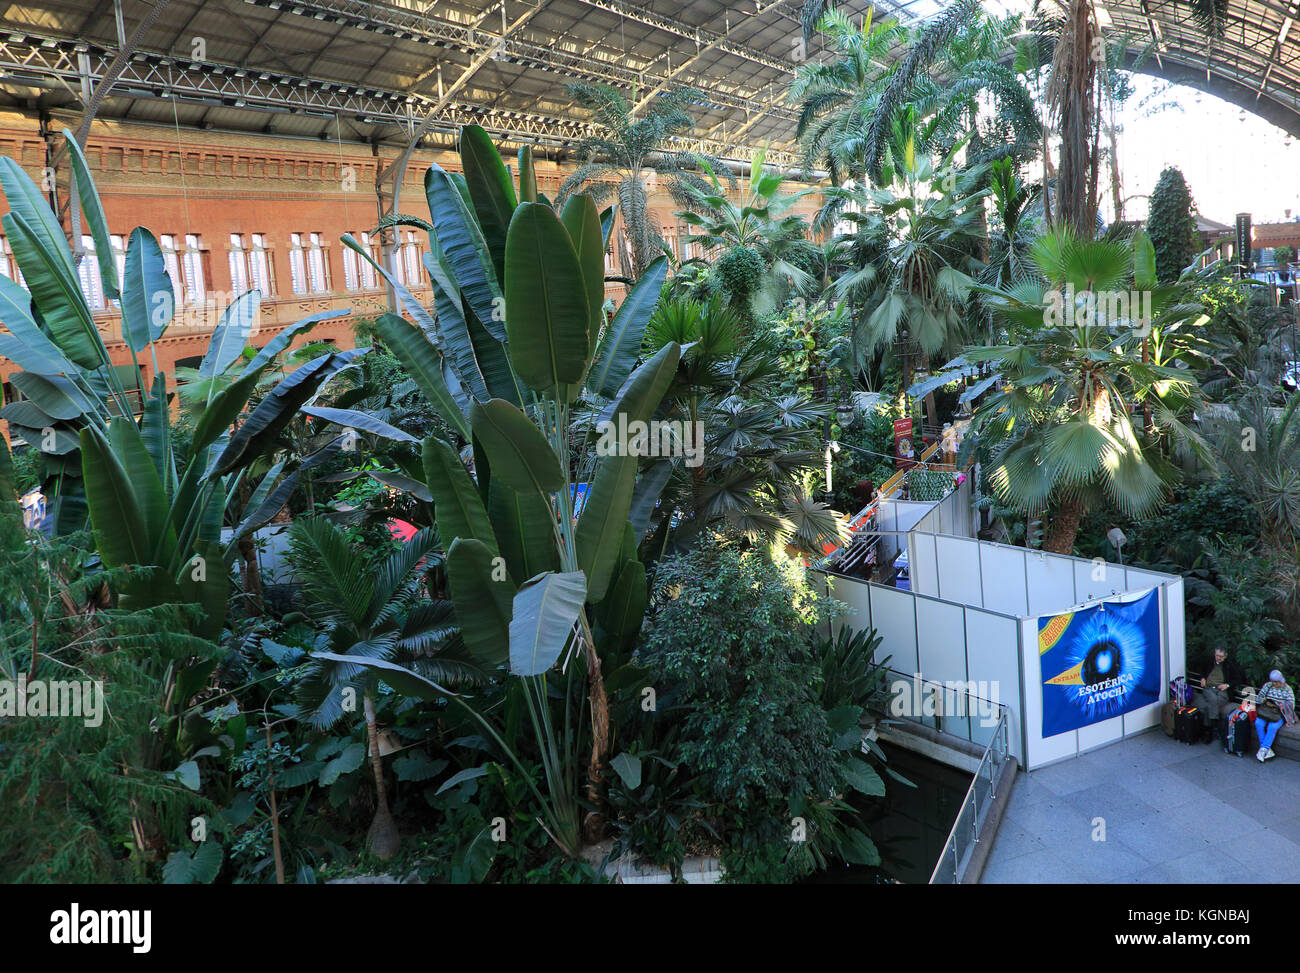 Las plantas que crecen en la selva tropical jardín interior de la estación de Atocha, Madrid, España Foto de stock